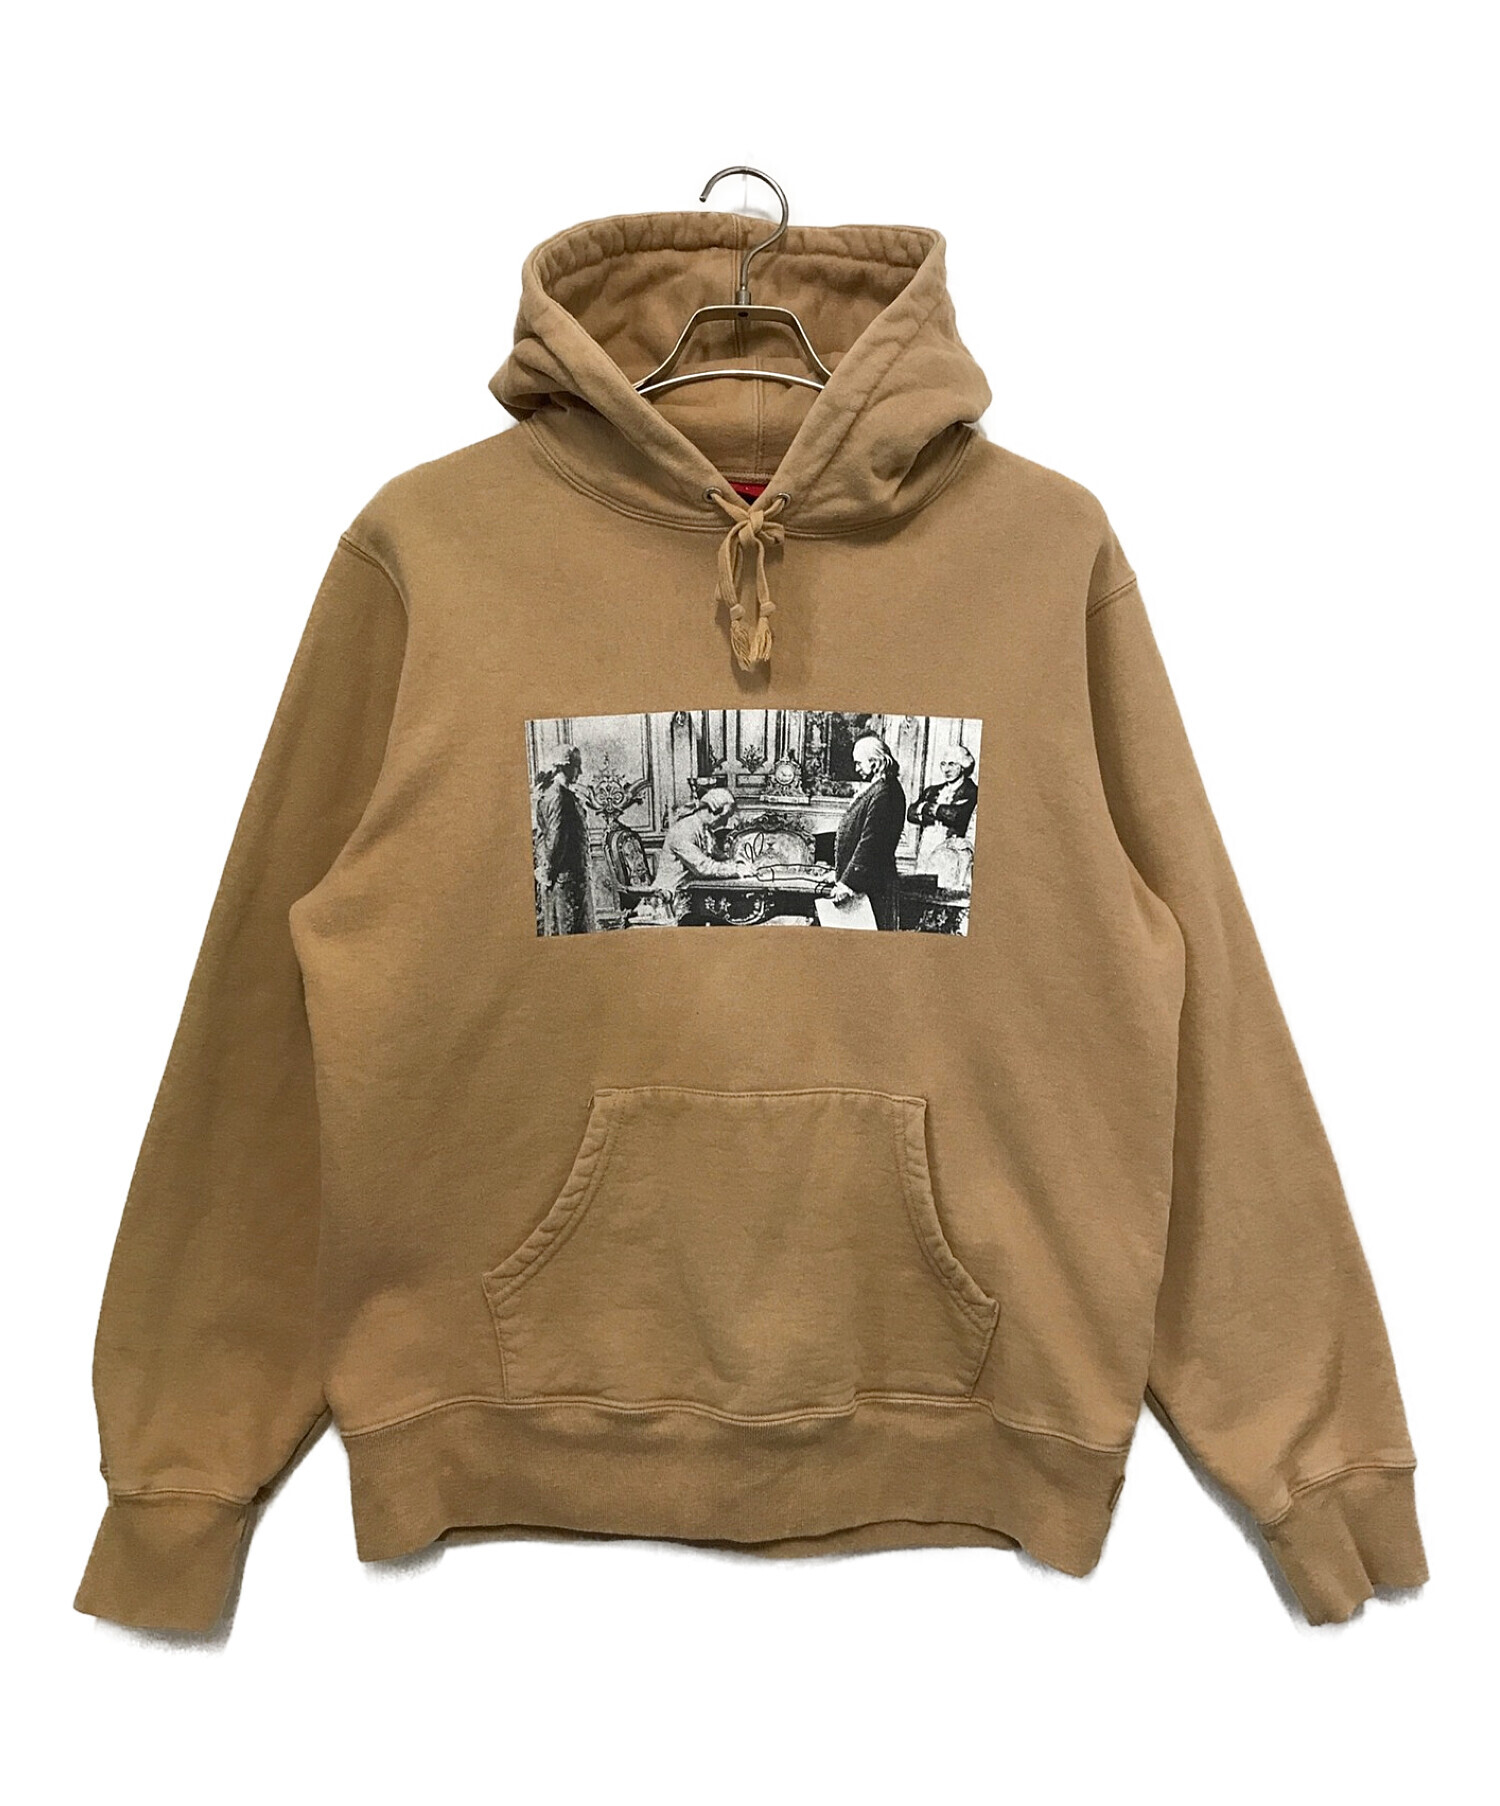 Supreme × Mike Kelley Hooded Sweatshirt